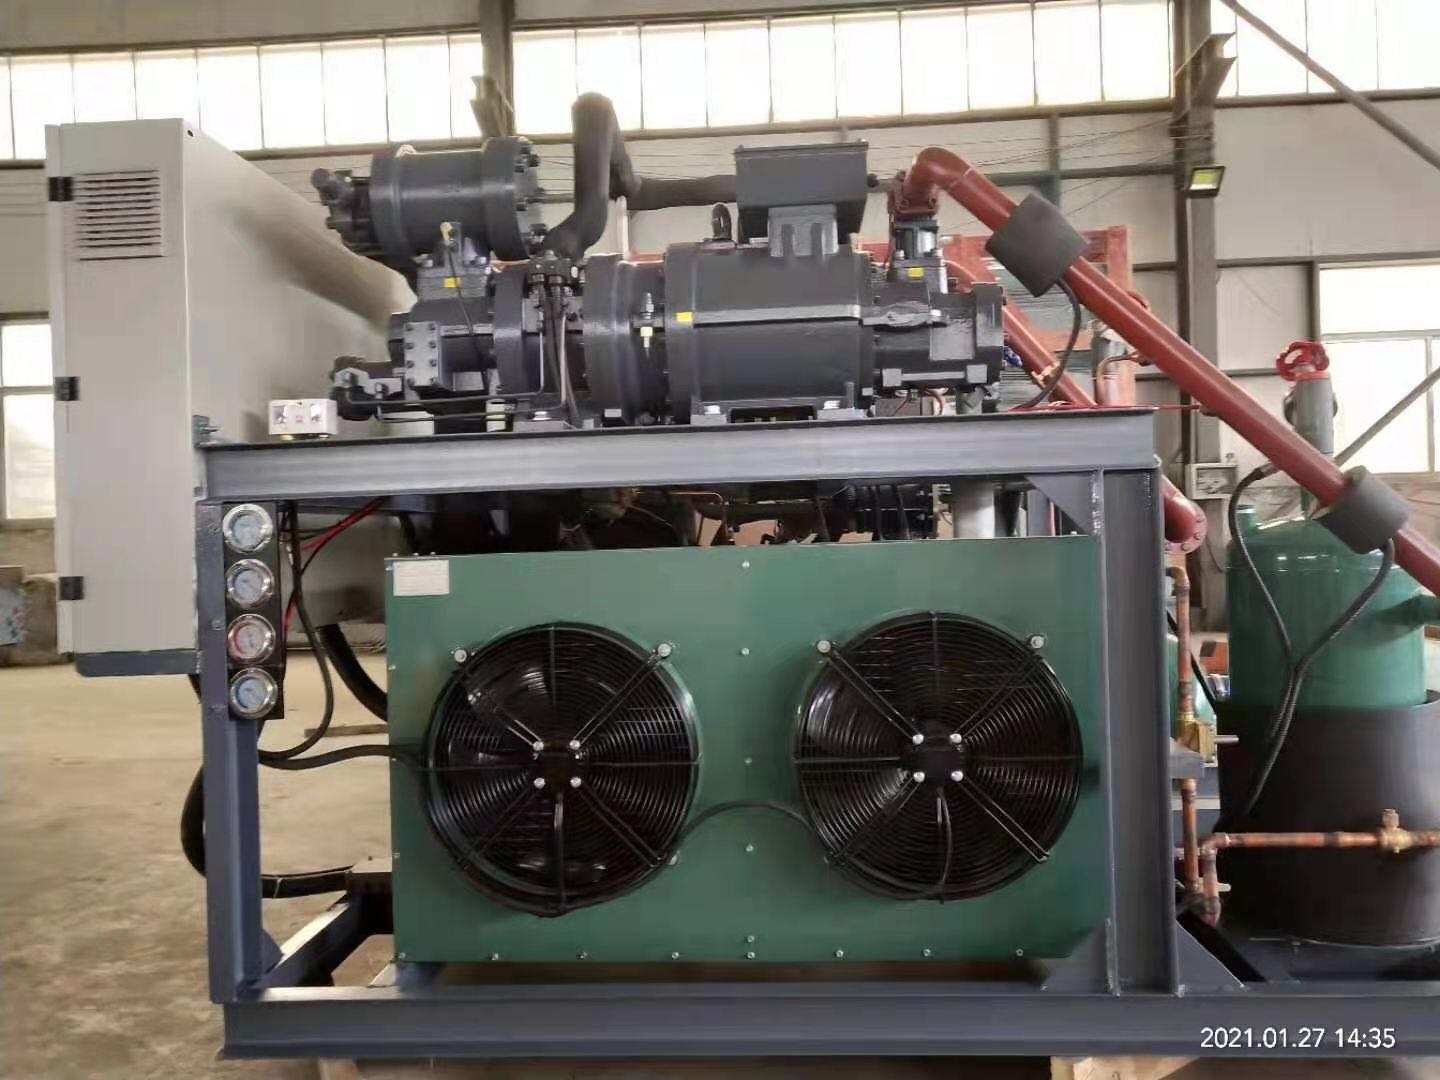 弗斯特制冷系列制冷压缩机组采用知名品牌比泽尔 复盛等